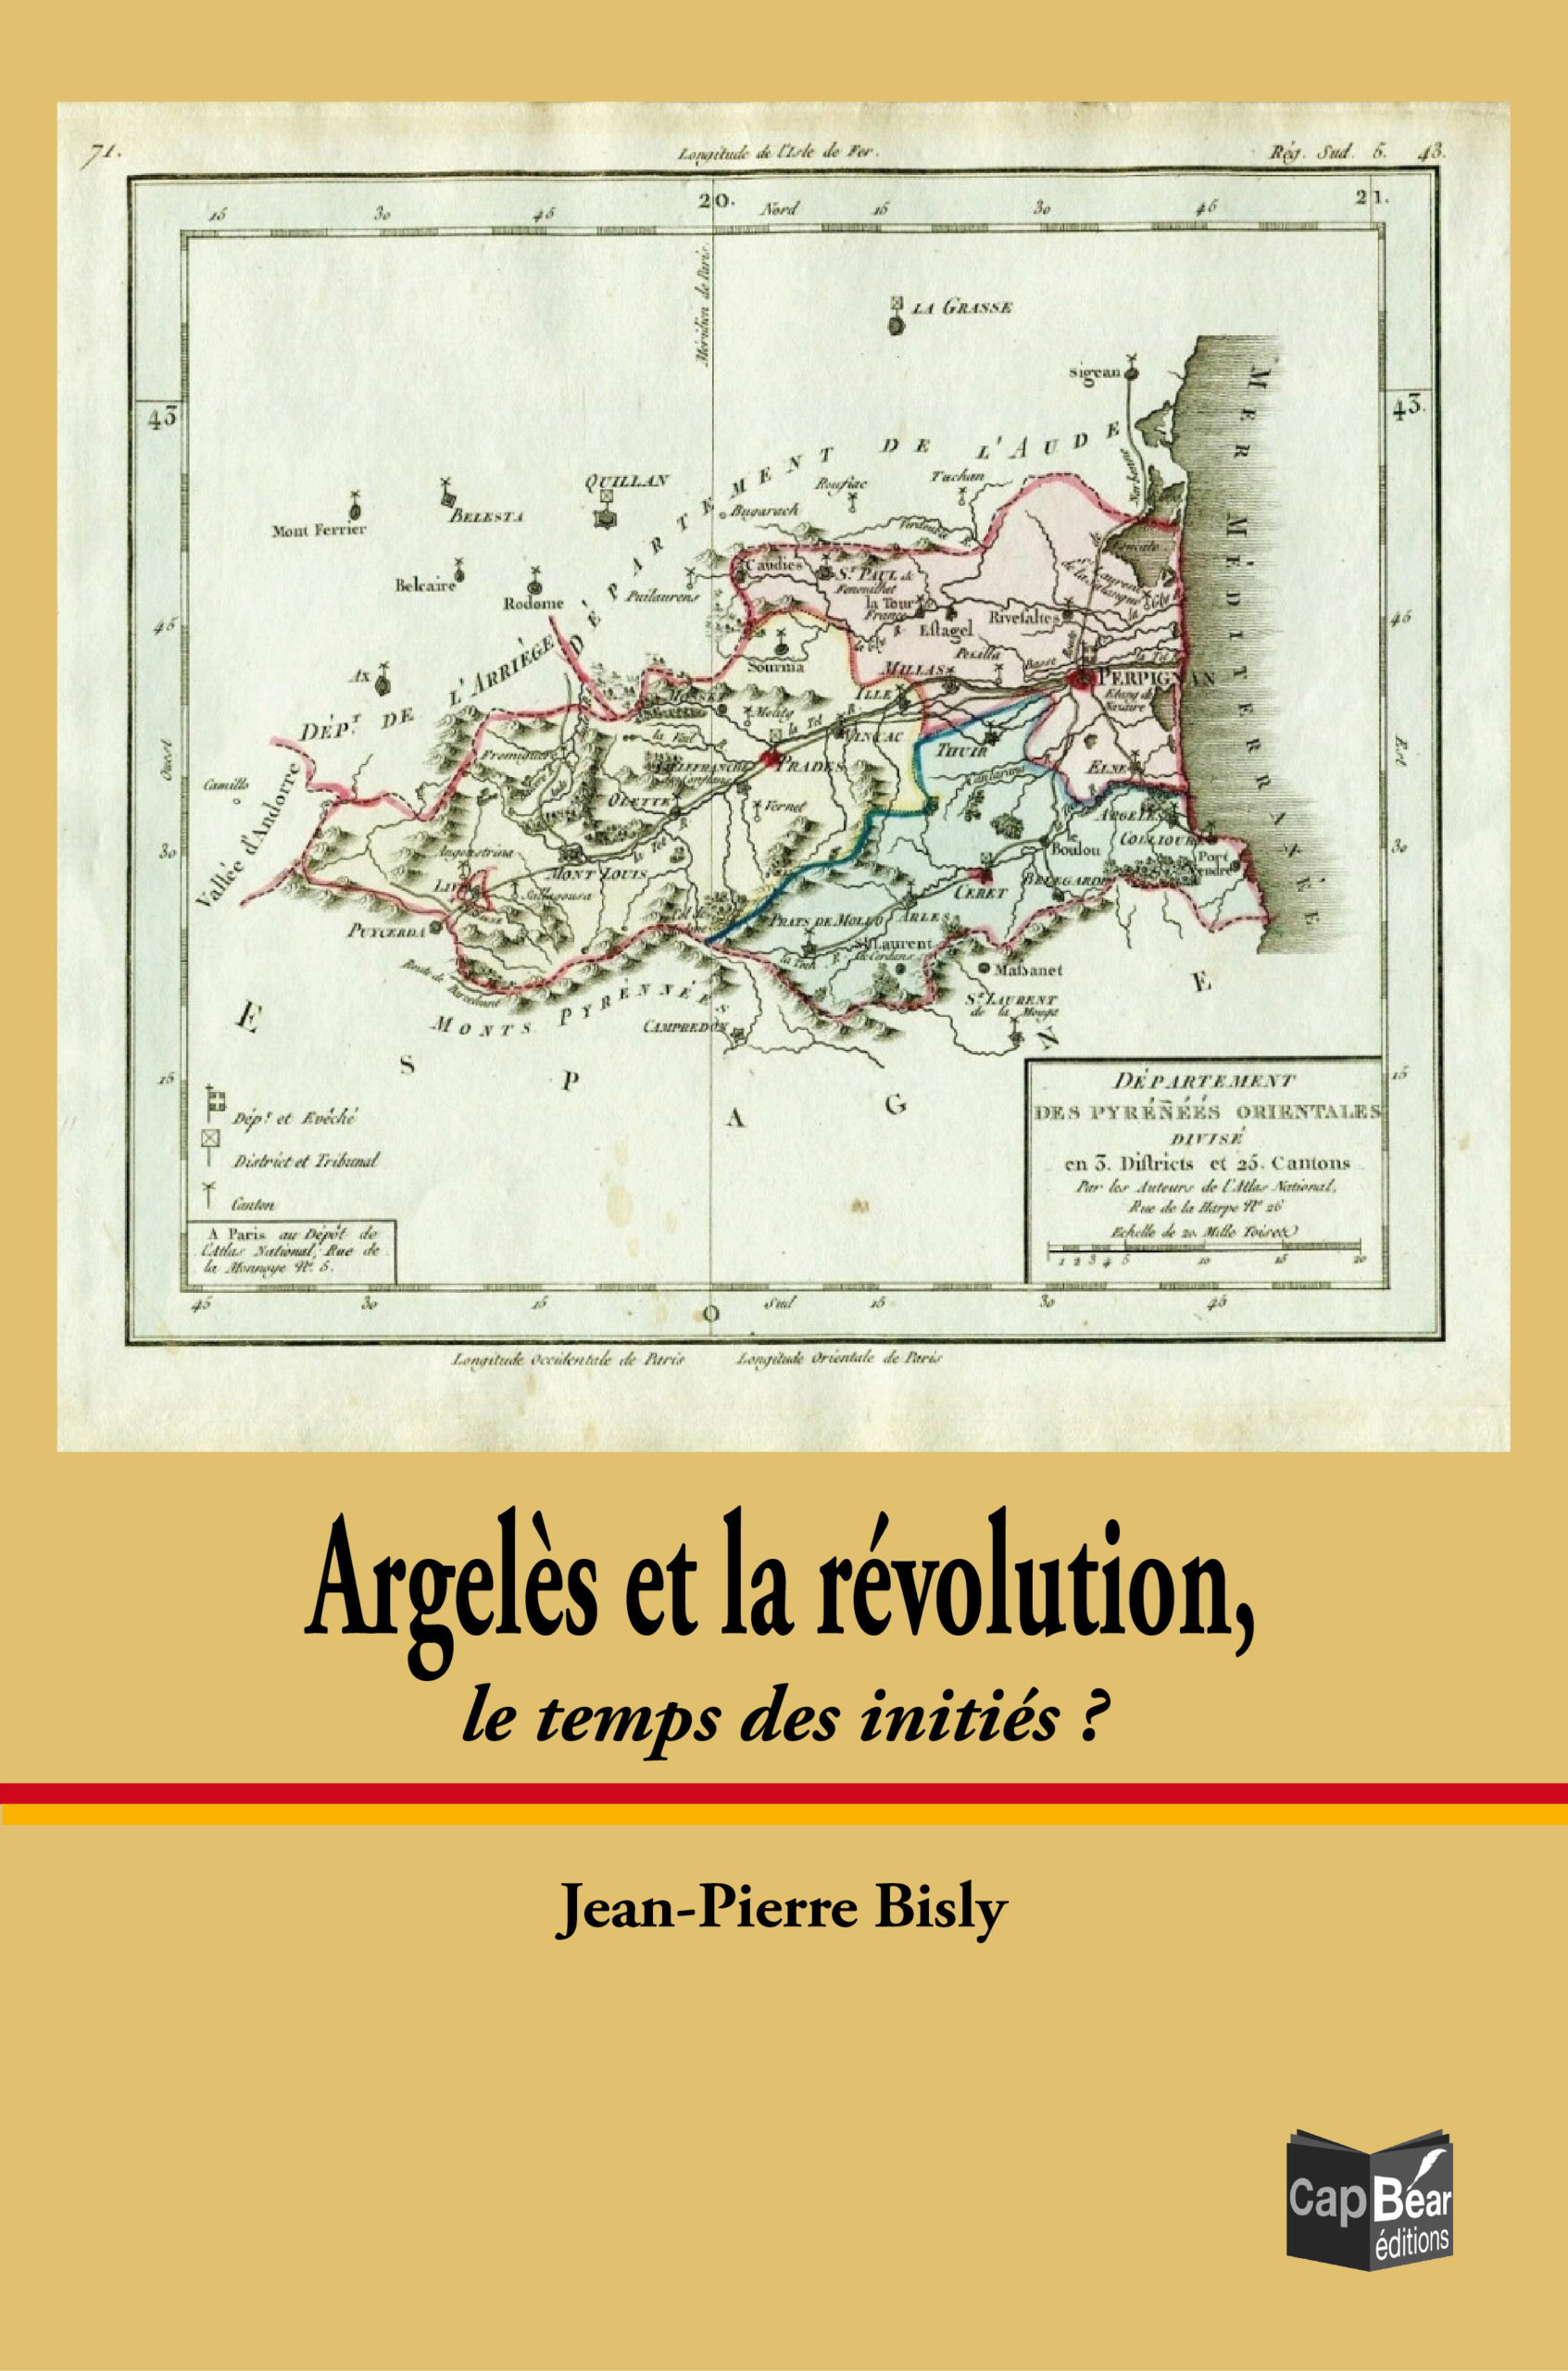 Argelès et la révolution, le temps des initiés ?